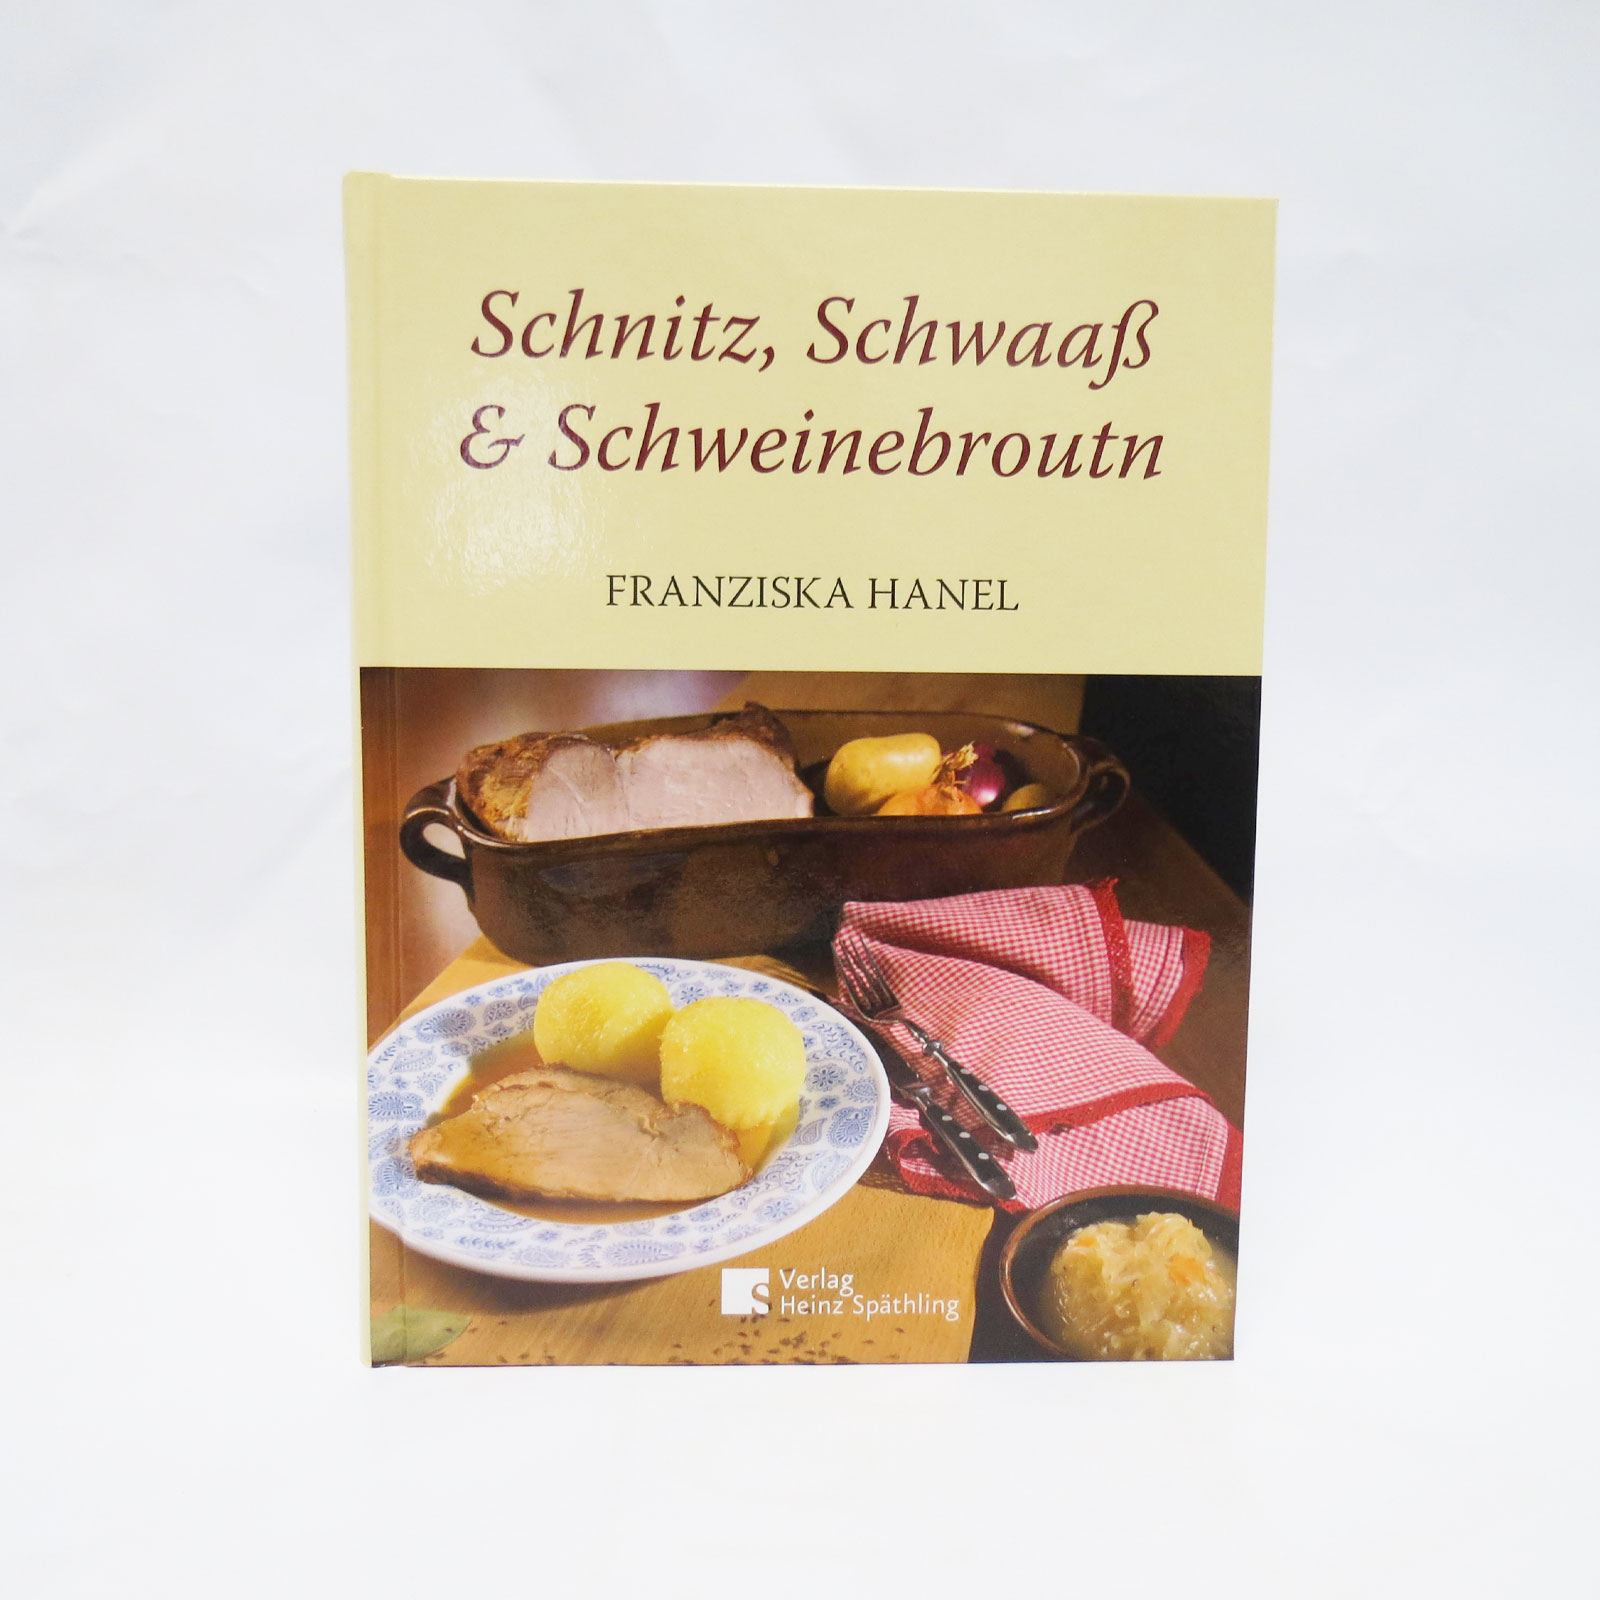 Schnitz, Schwaaß & Schweinebroudn